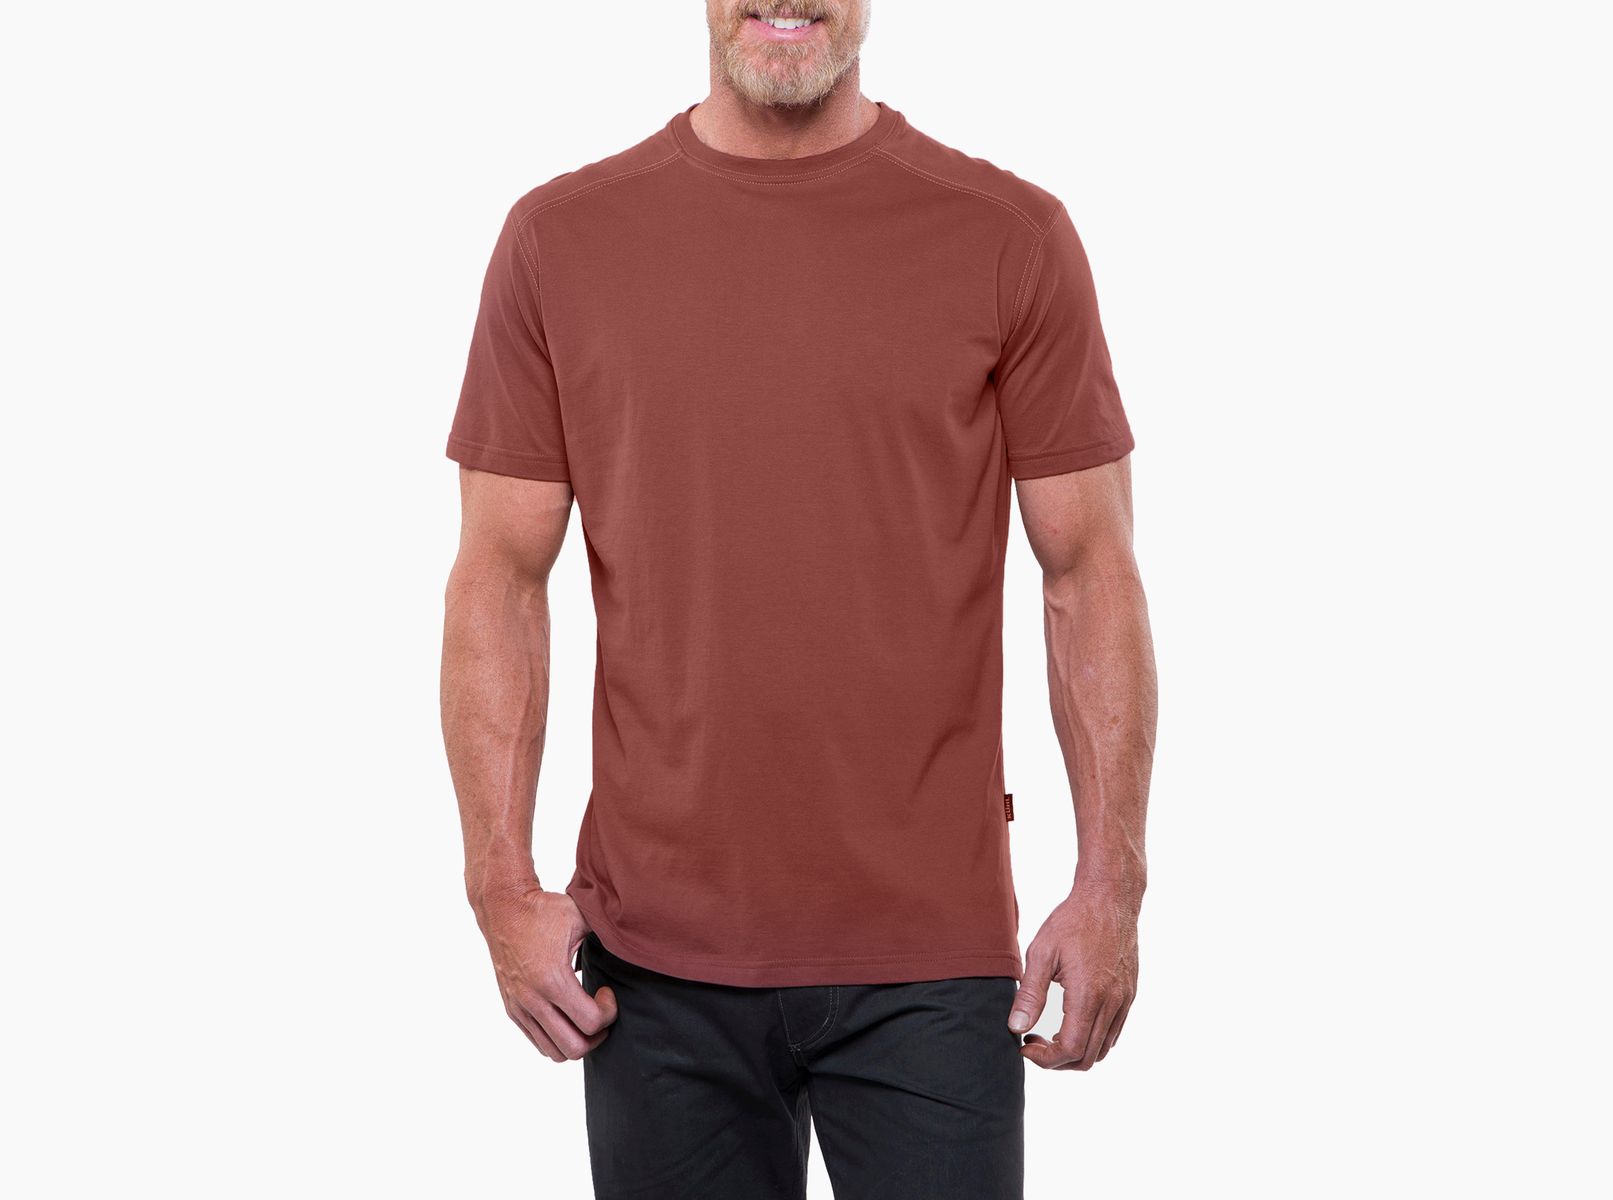 Kuhl Bravado Short Sleeve Shirt - Mens